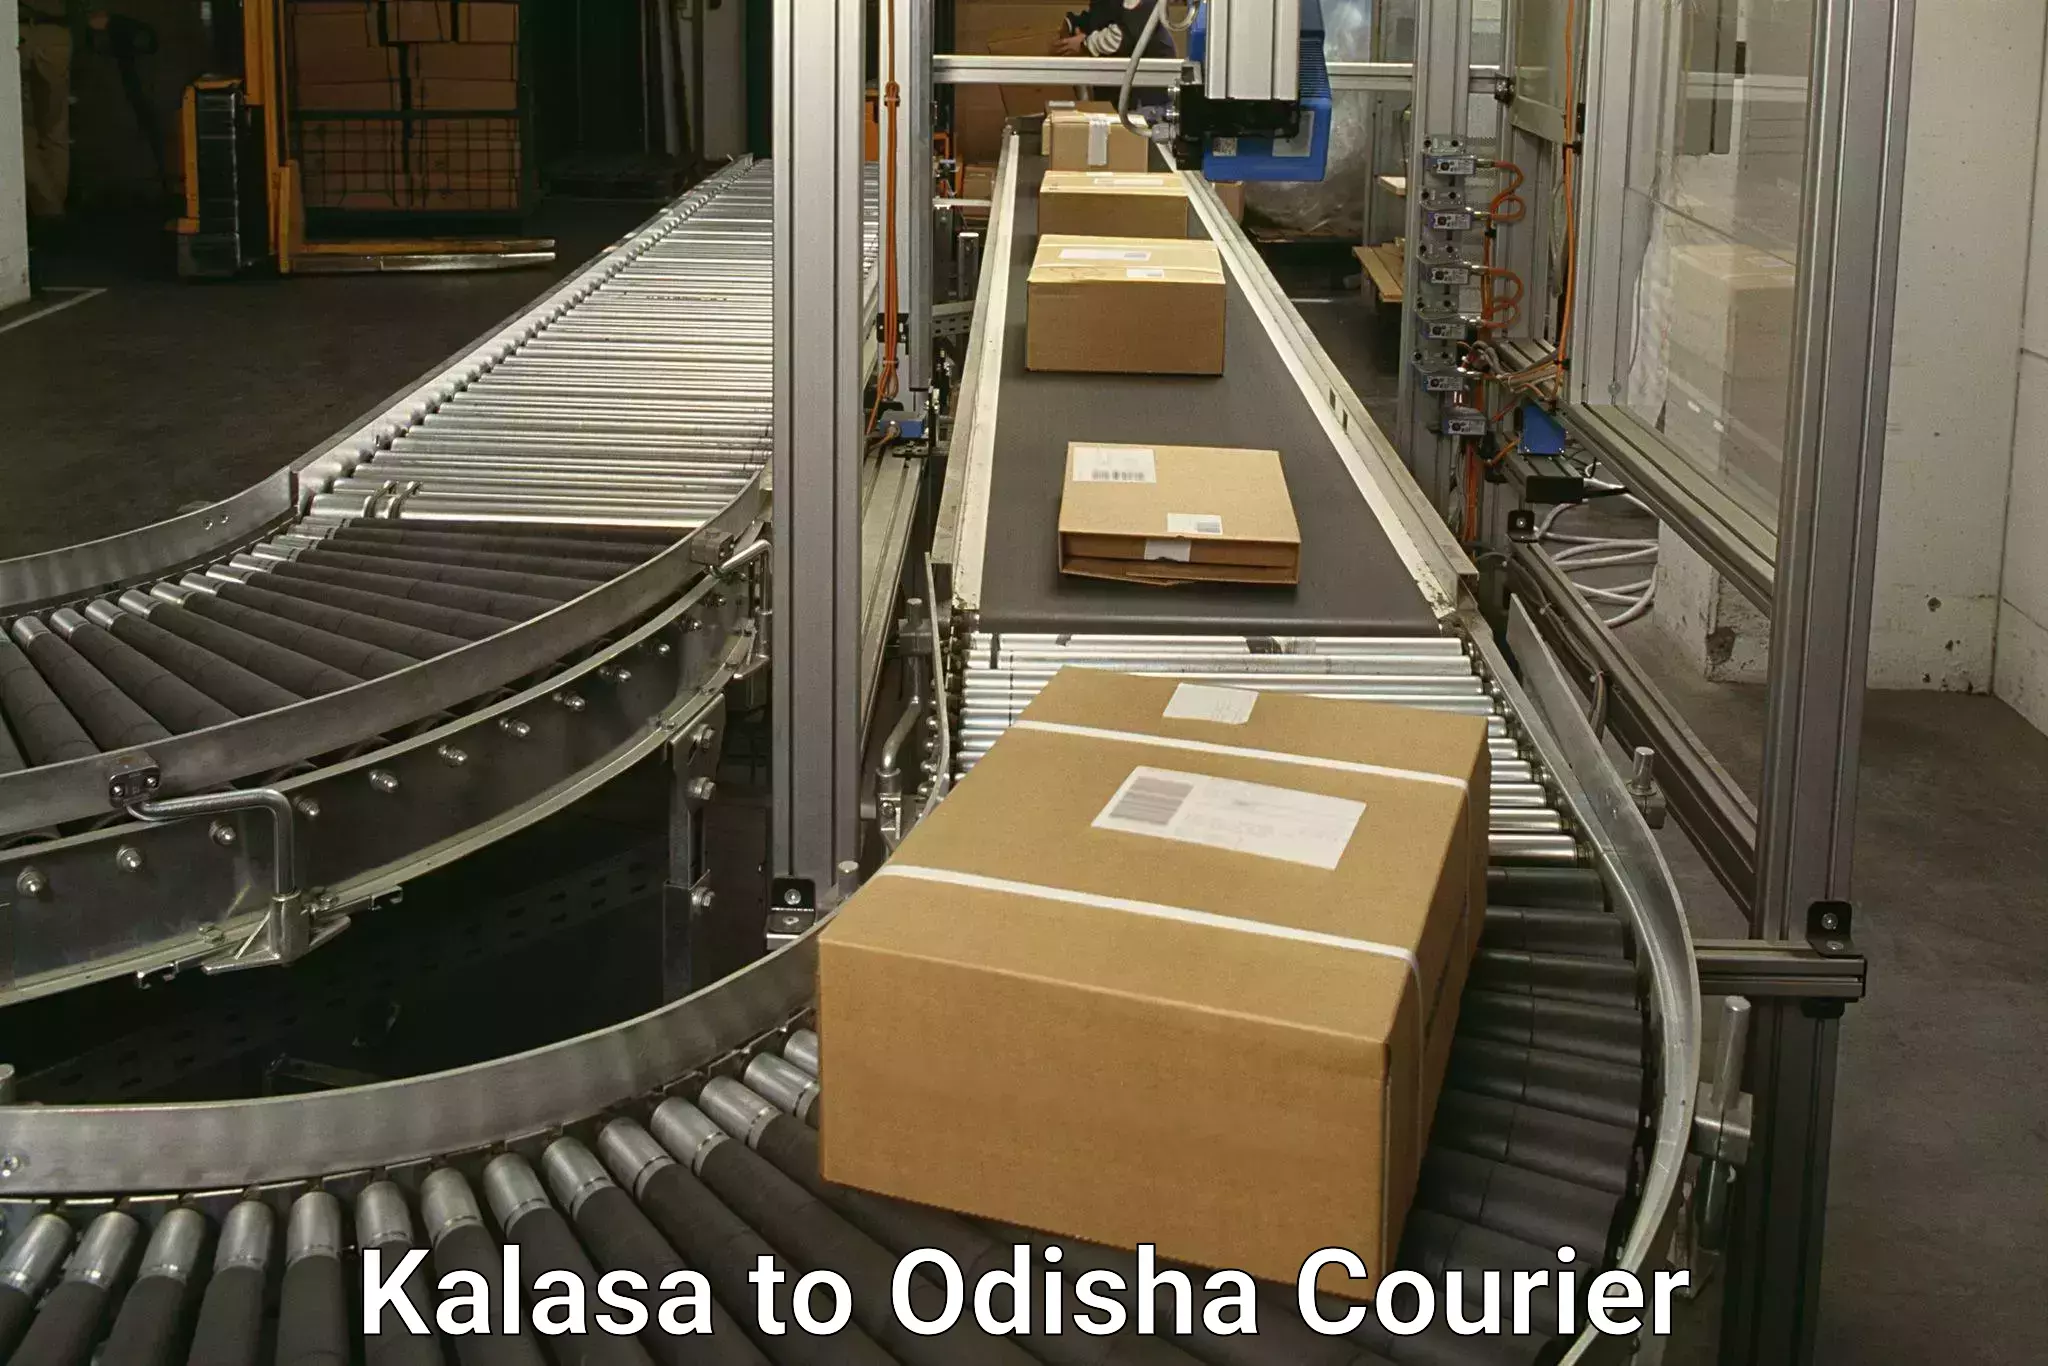 High-performance logistics Kalasa to Gajapati